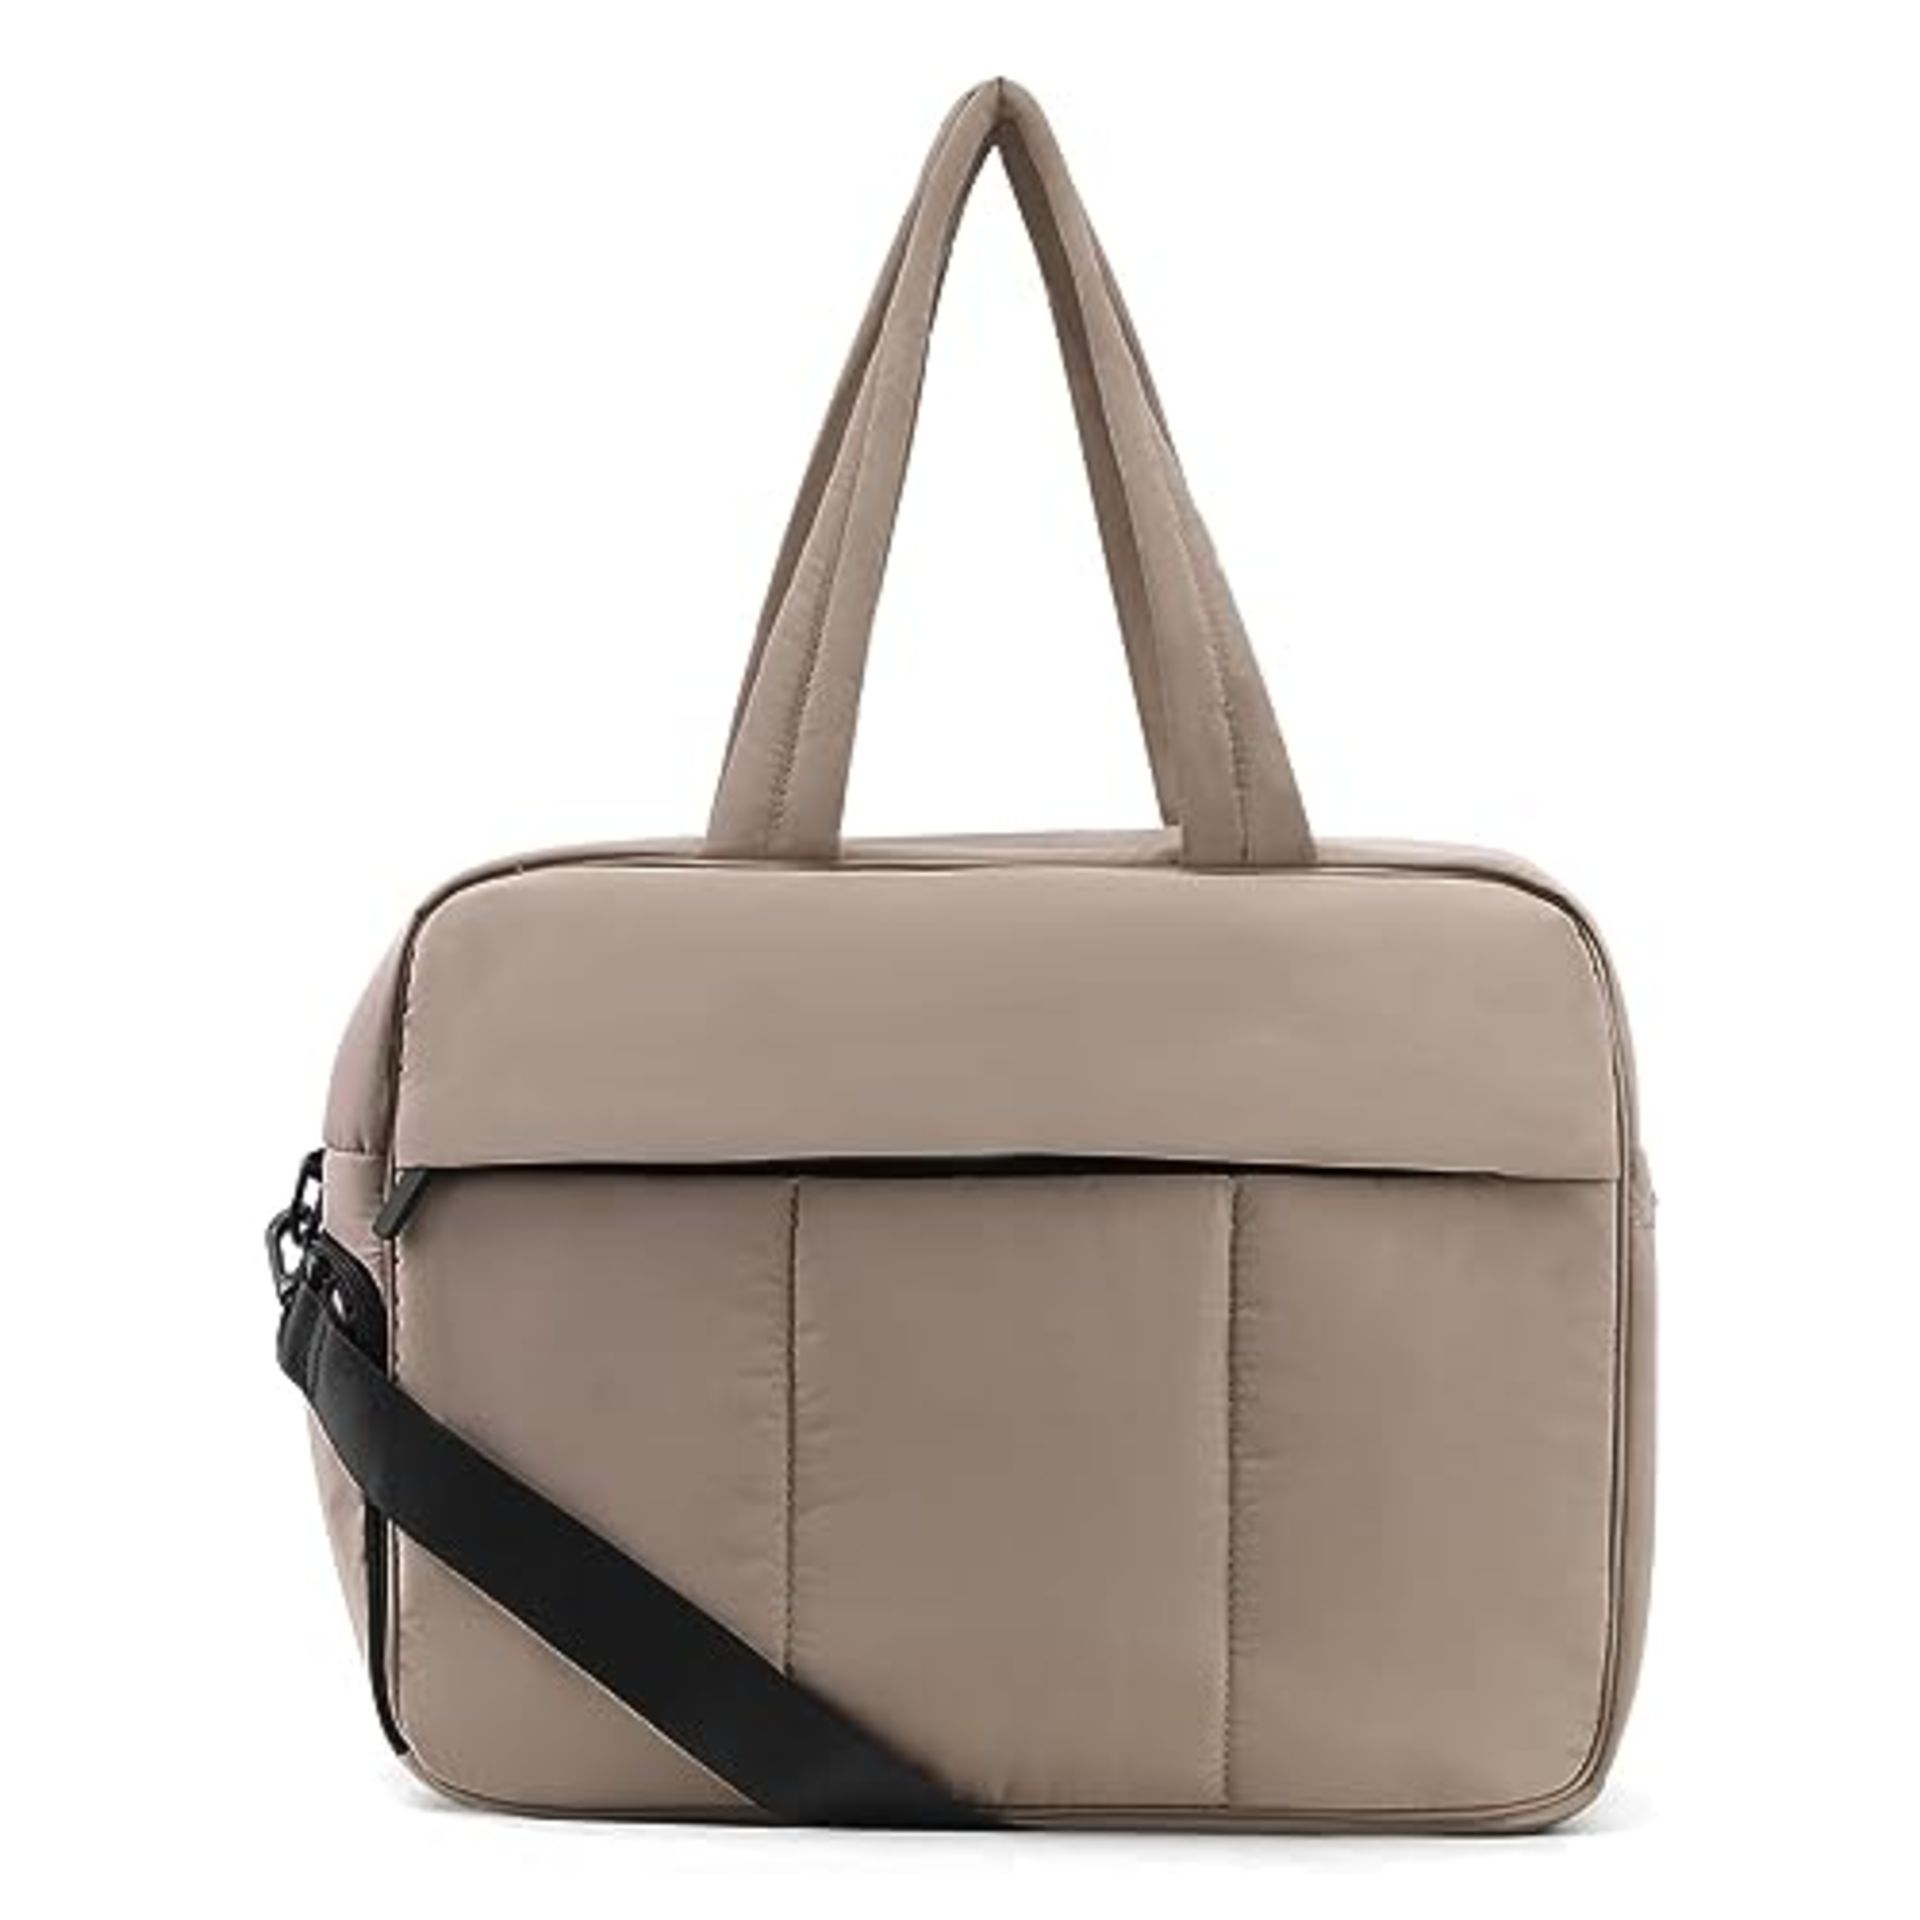 RRP £34.24 DKIIL NOIYB Travel Duffel Bag for Women Men - Image 2 of 4